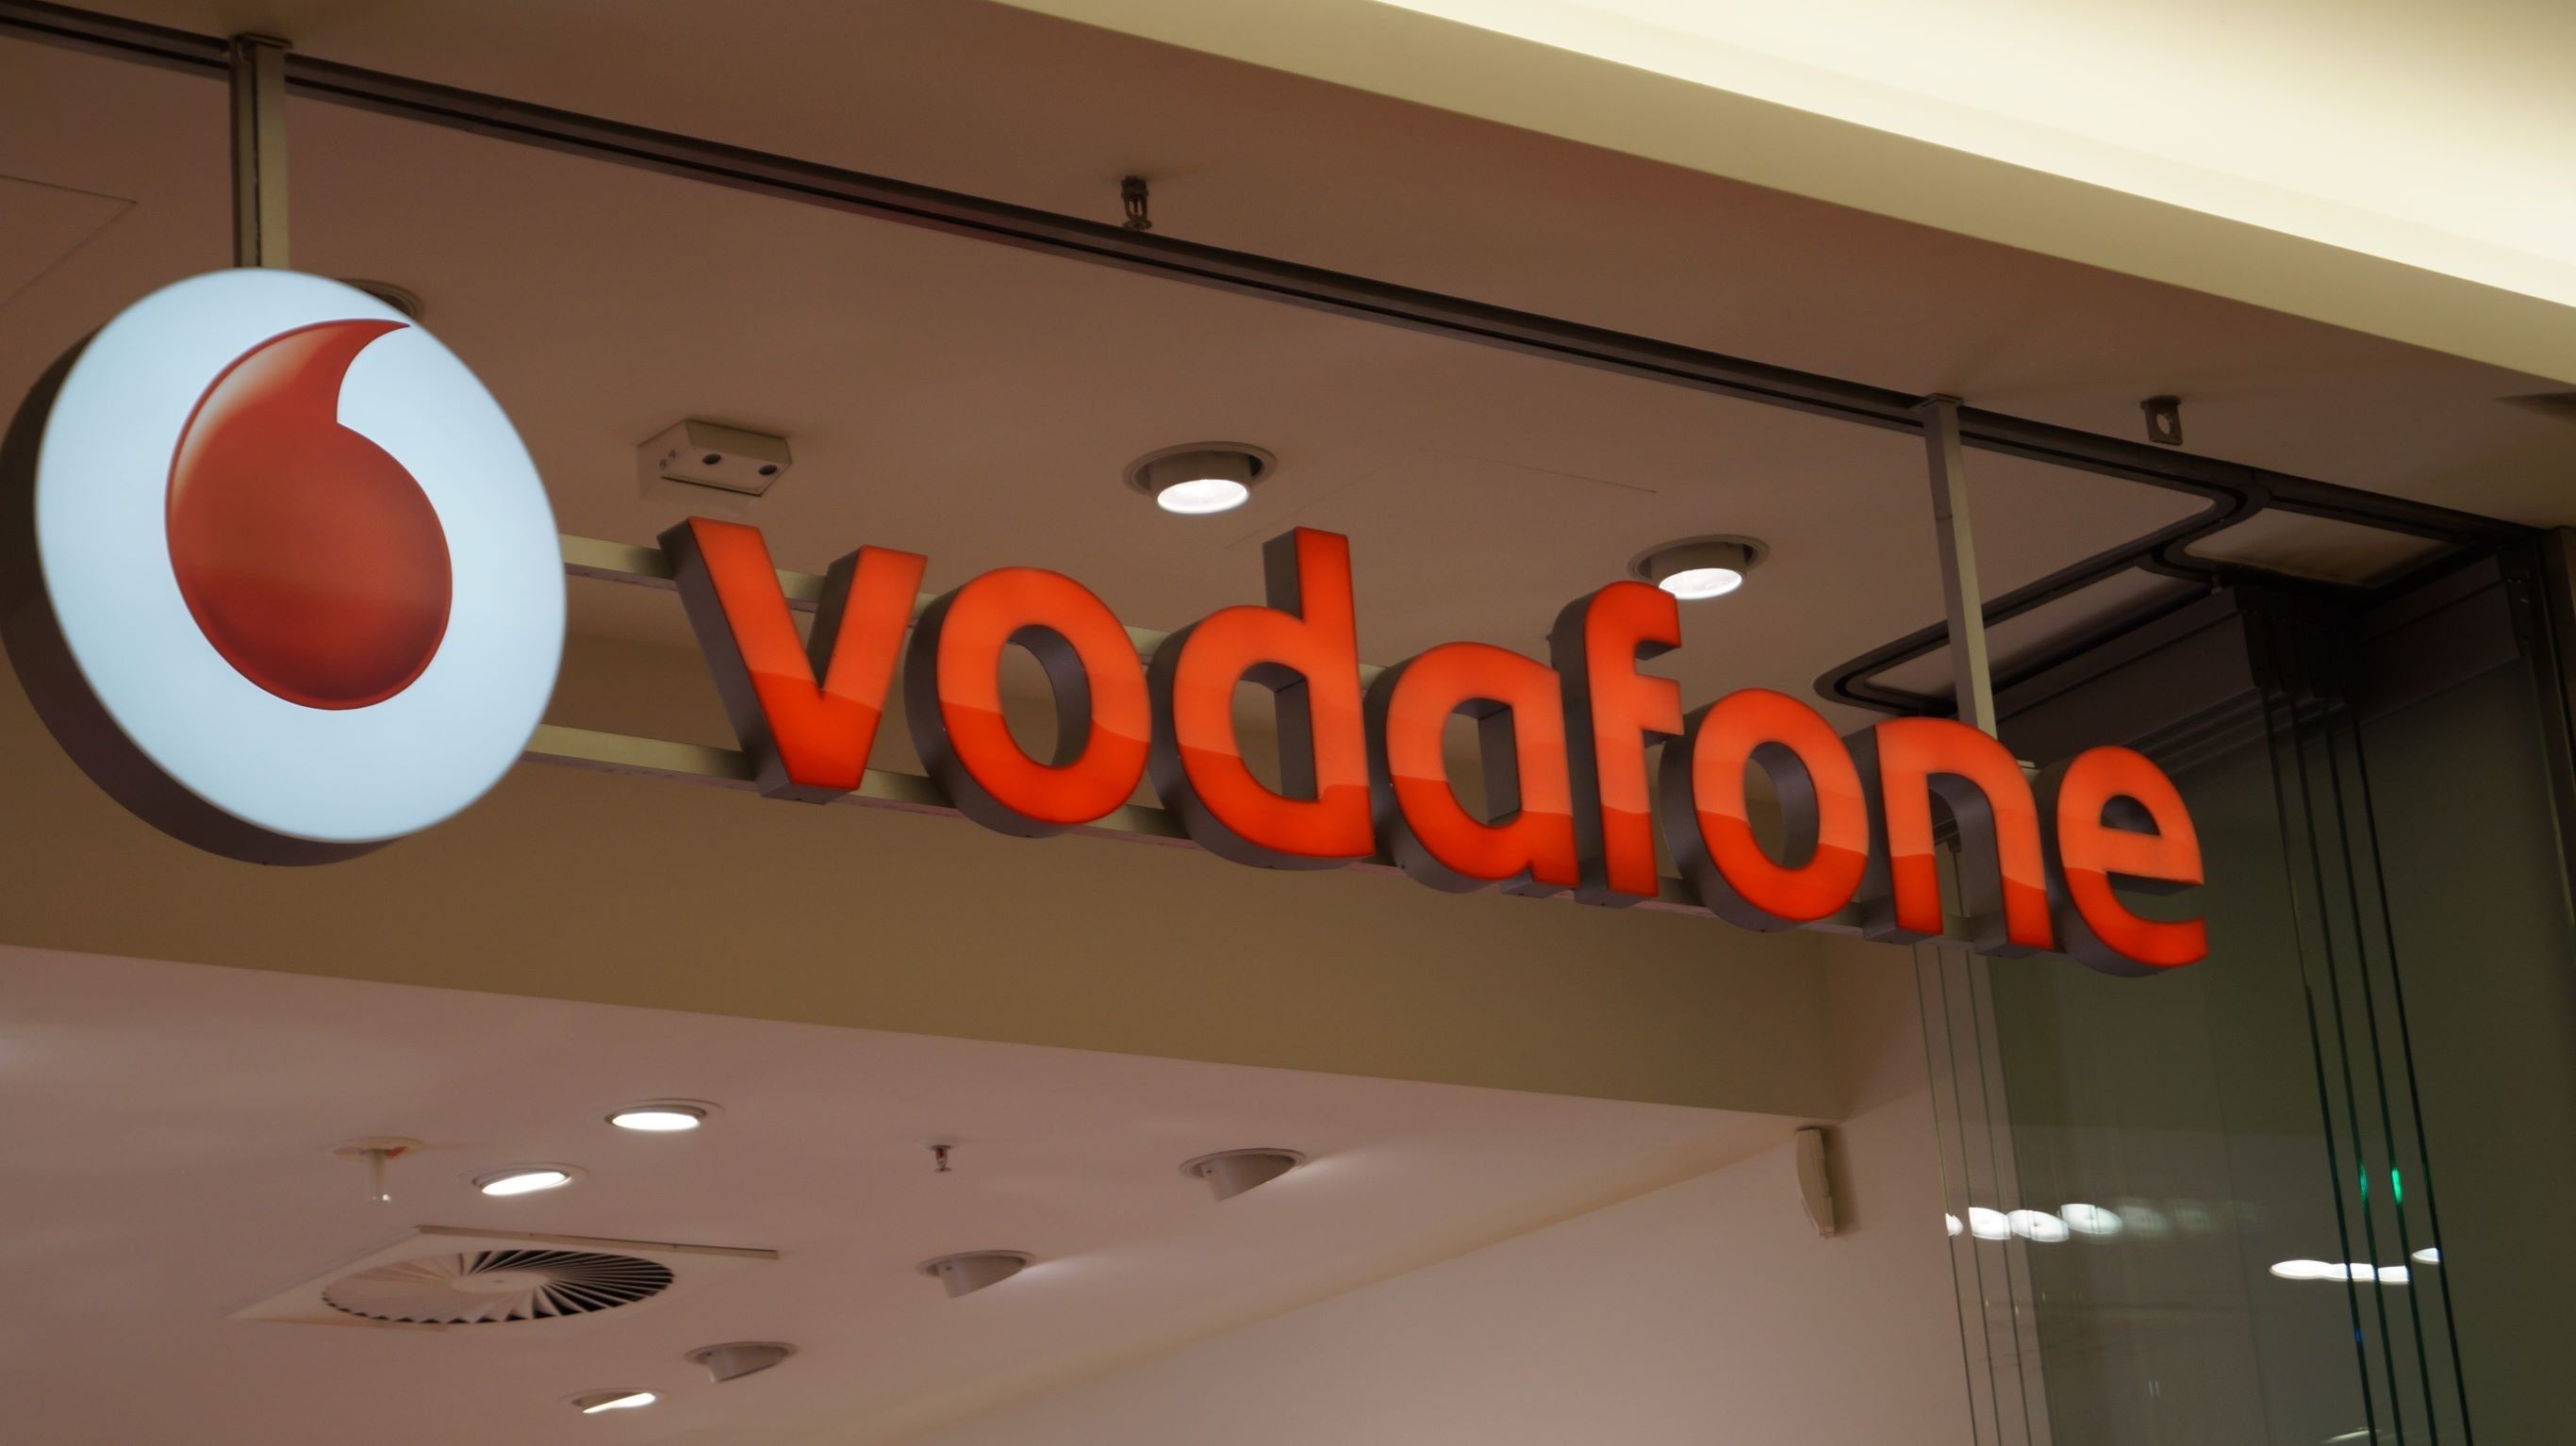 Az előző tulajdonosok hibáztak, fizethet a Vodafone